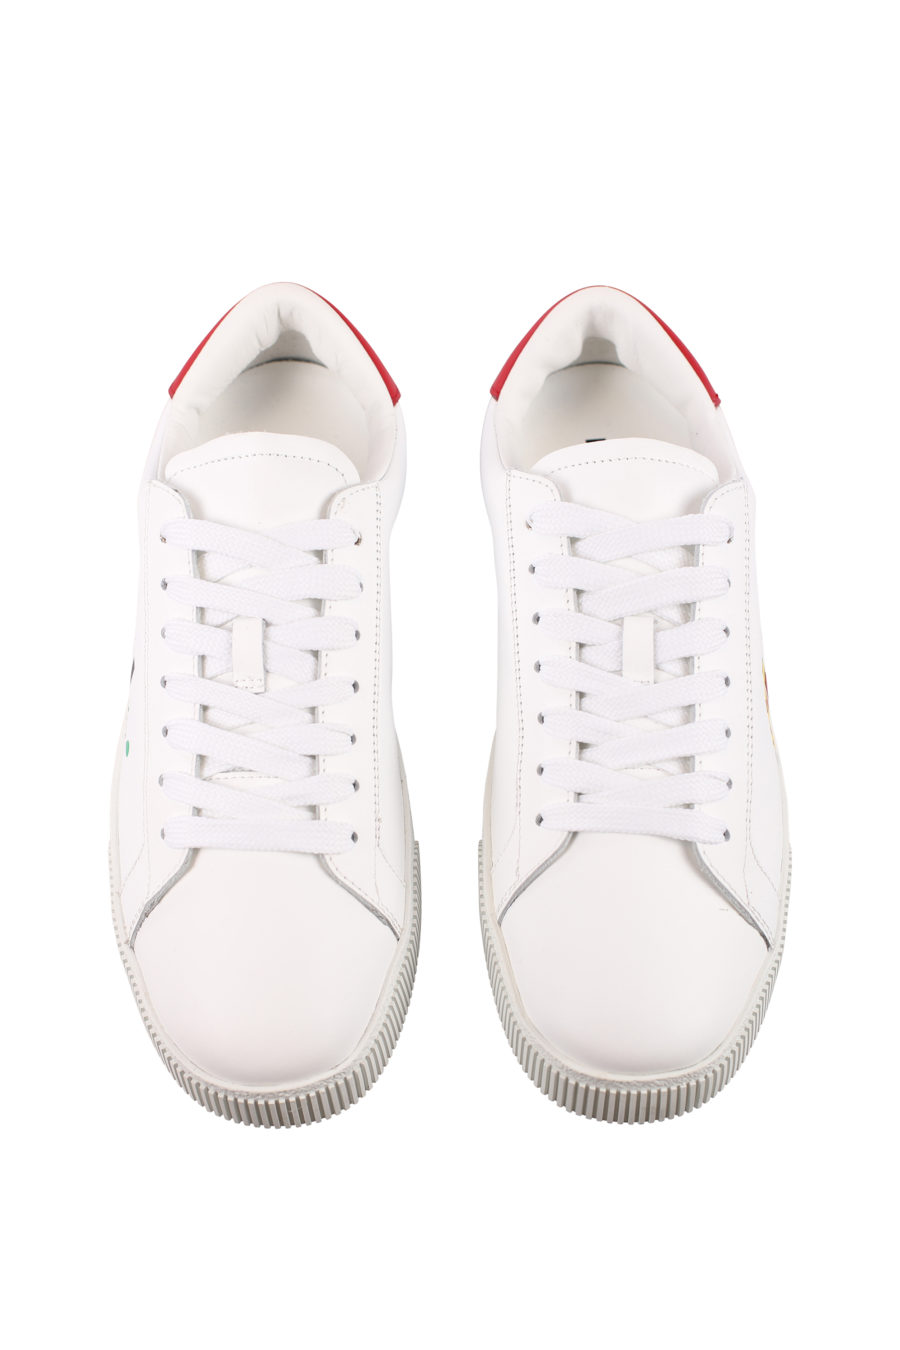 Zapatillas blancas con logo "icon splash" - IMG 0716